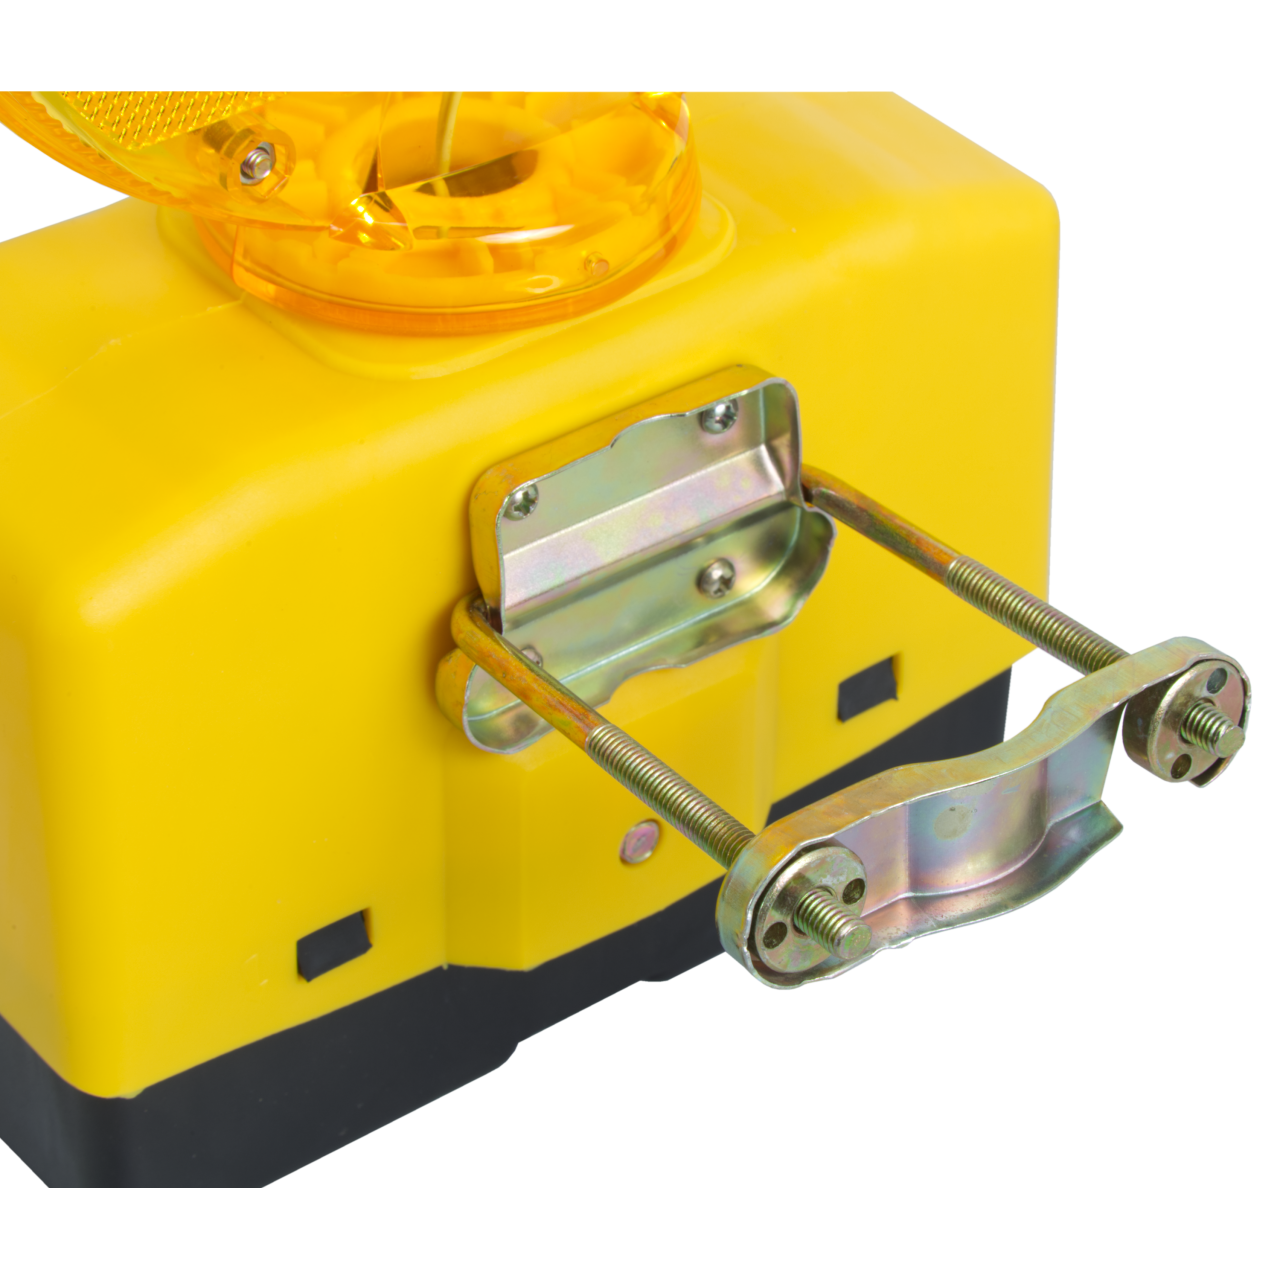 LED-Blinkleuchte MP-205 gelb - passend zu allen Motorst